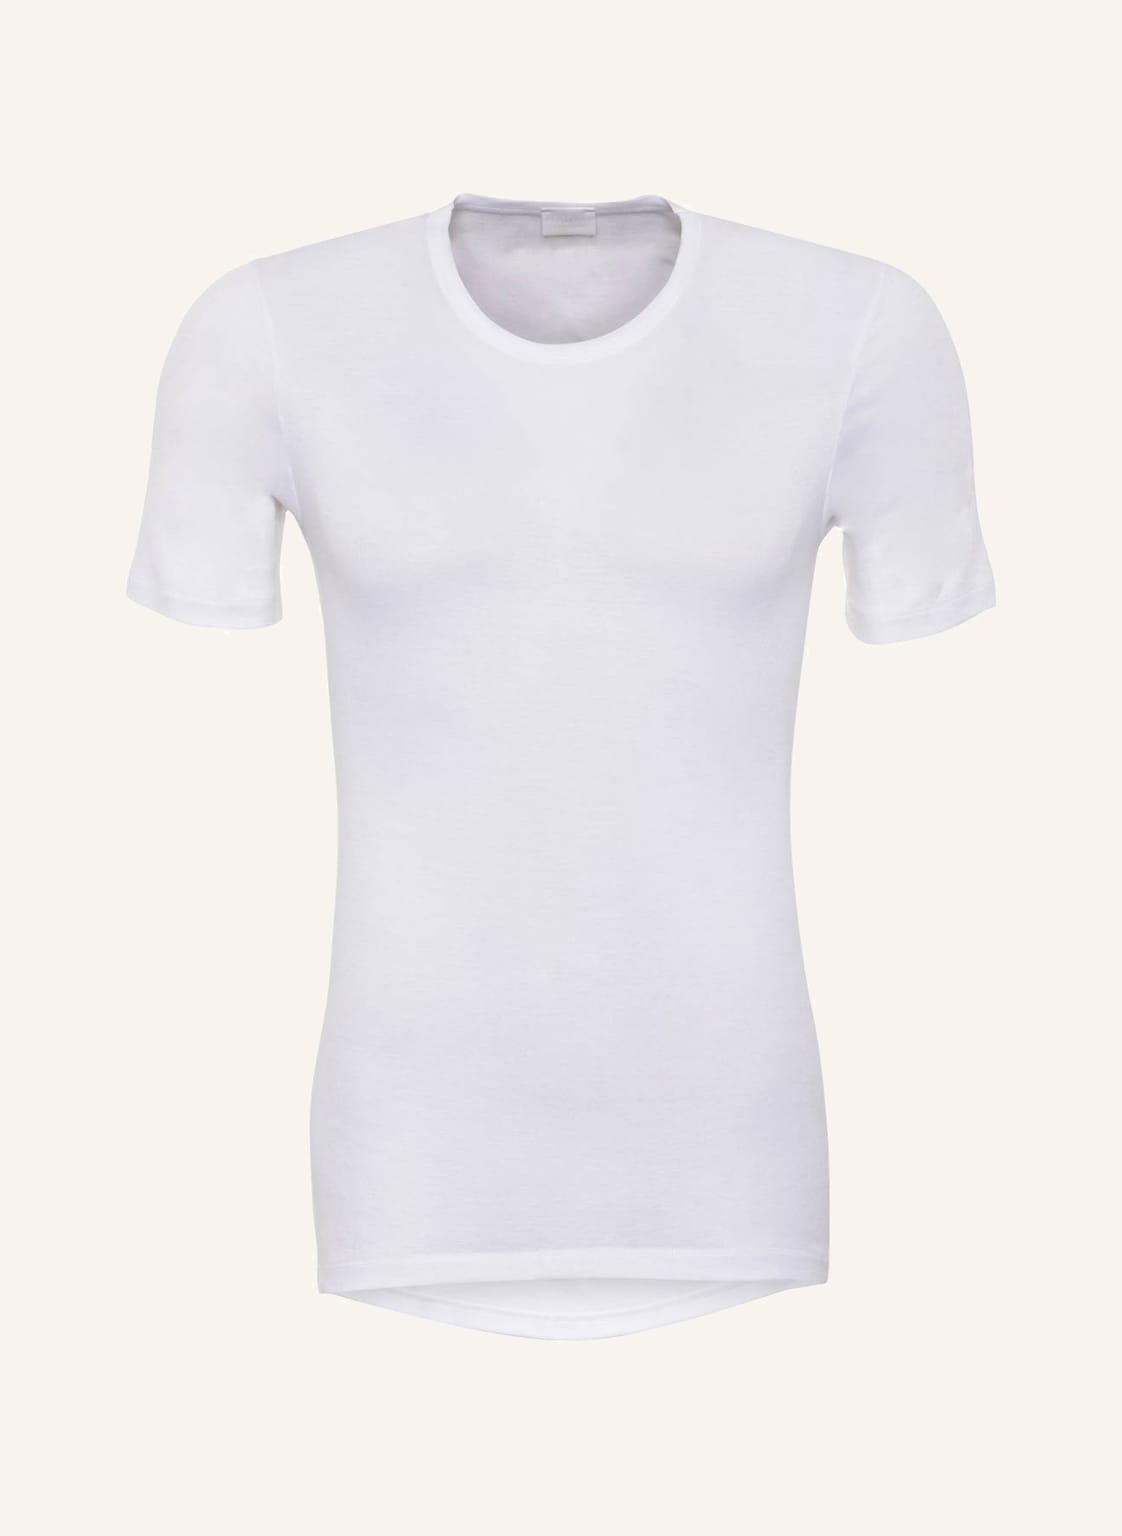 Hanro T-Shirt Cotton Pure weiss von Hanro